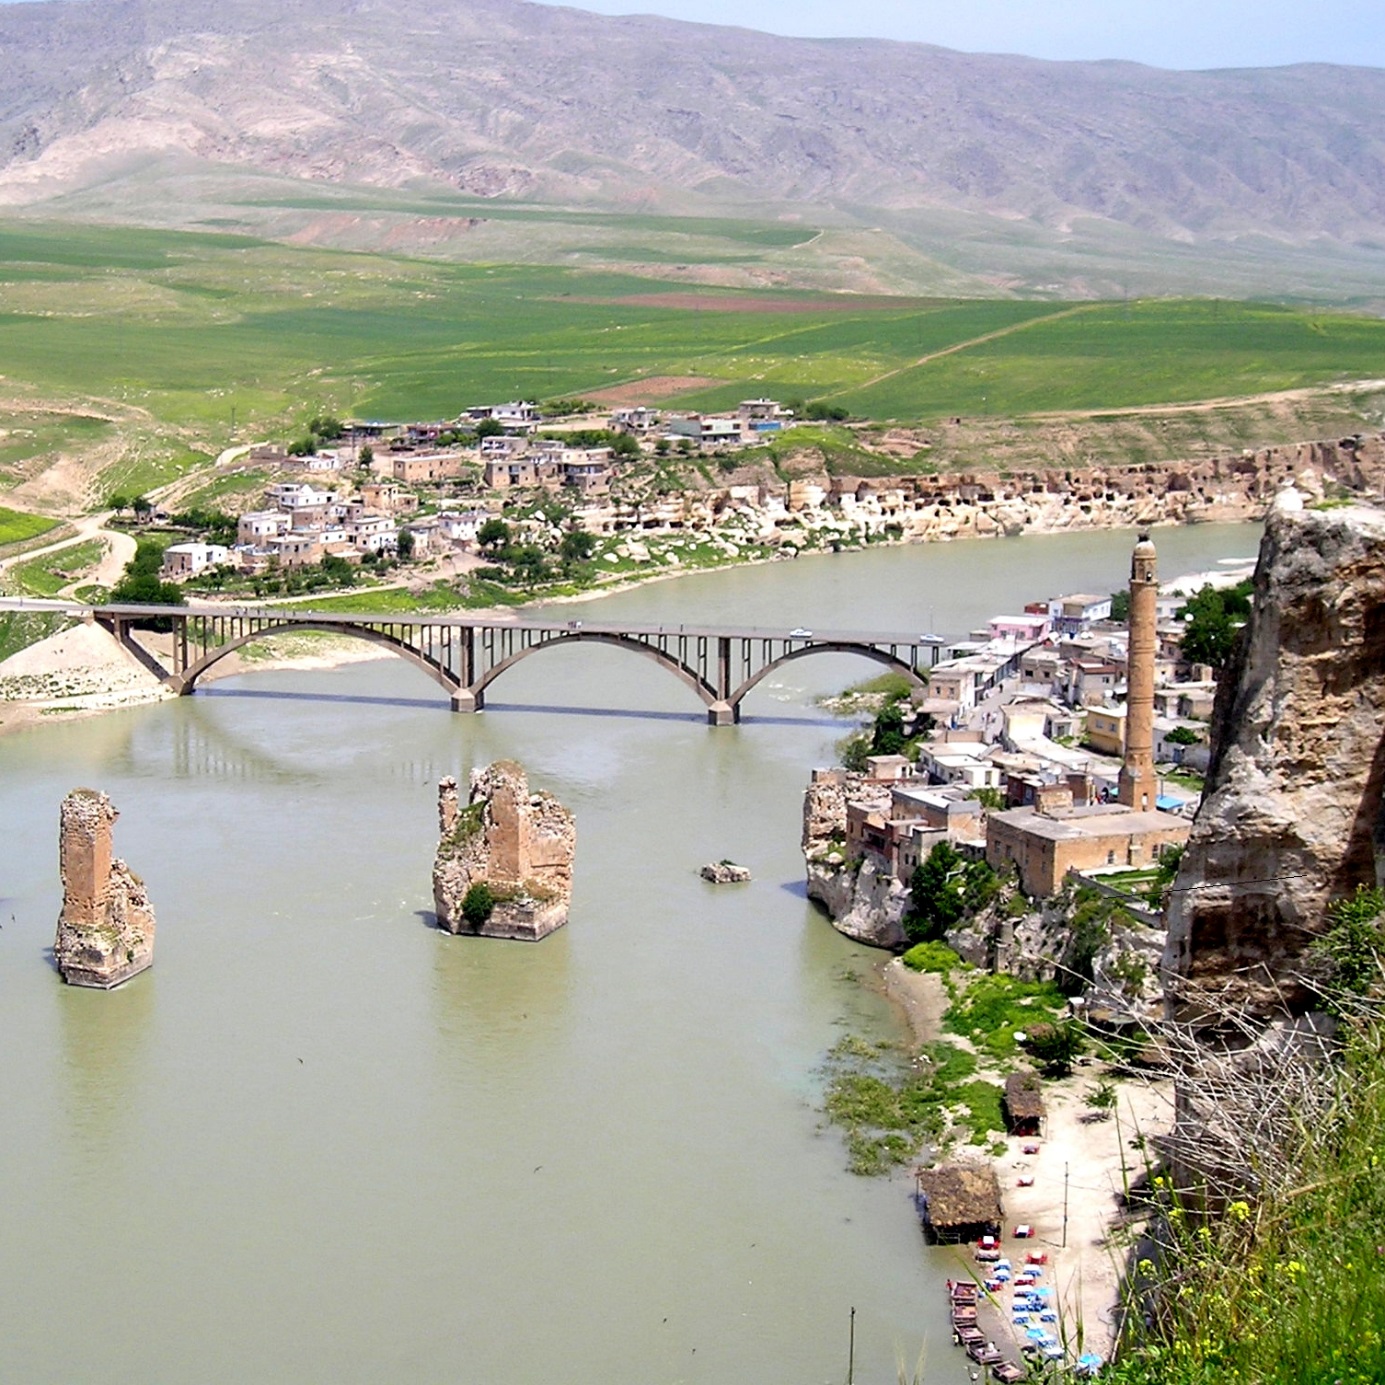 Město Hasankeyf, které bude částečně zaplaveno novou vodní elektrárnou Ilisu (zdroj Wikipedie).